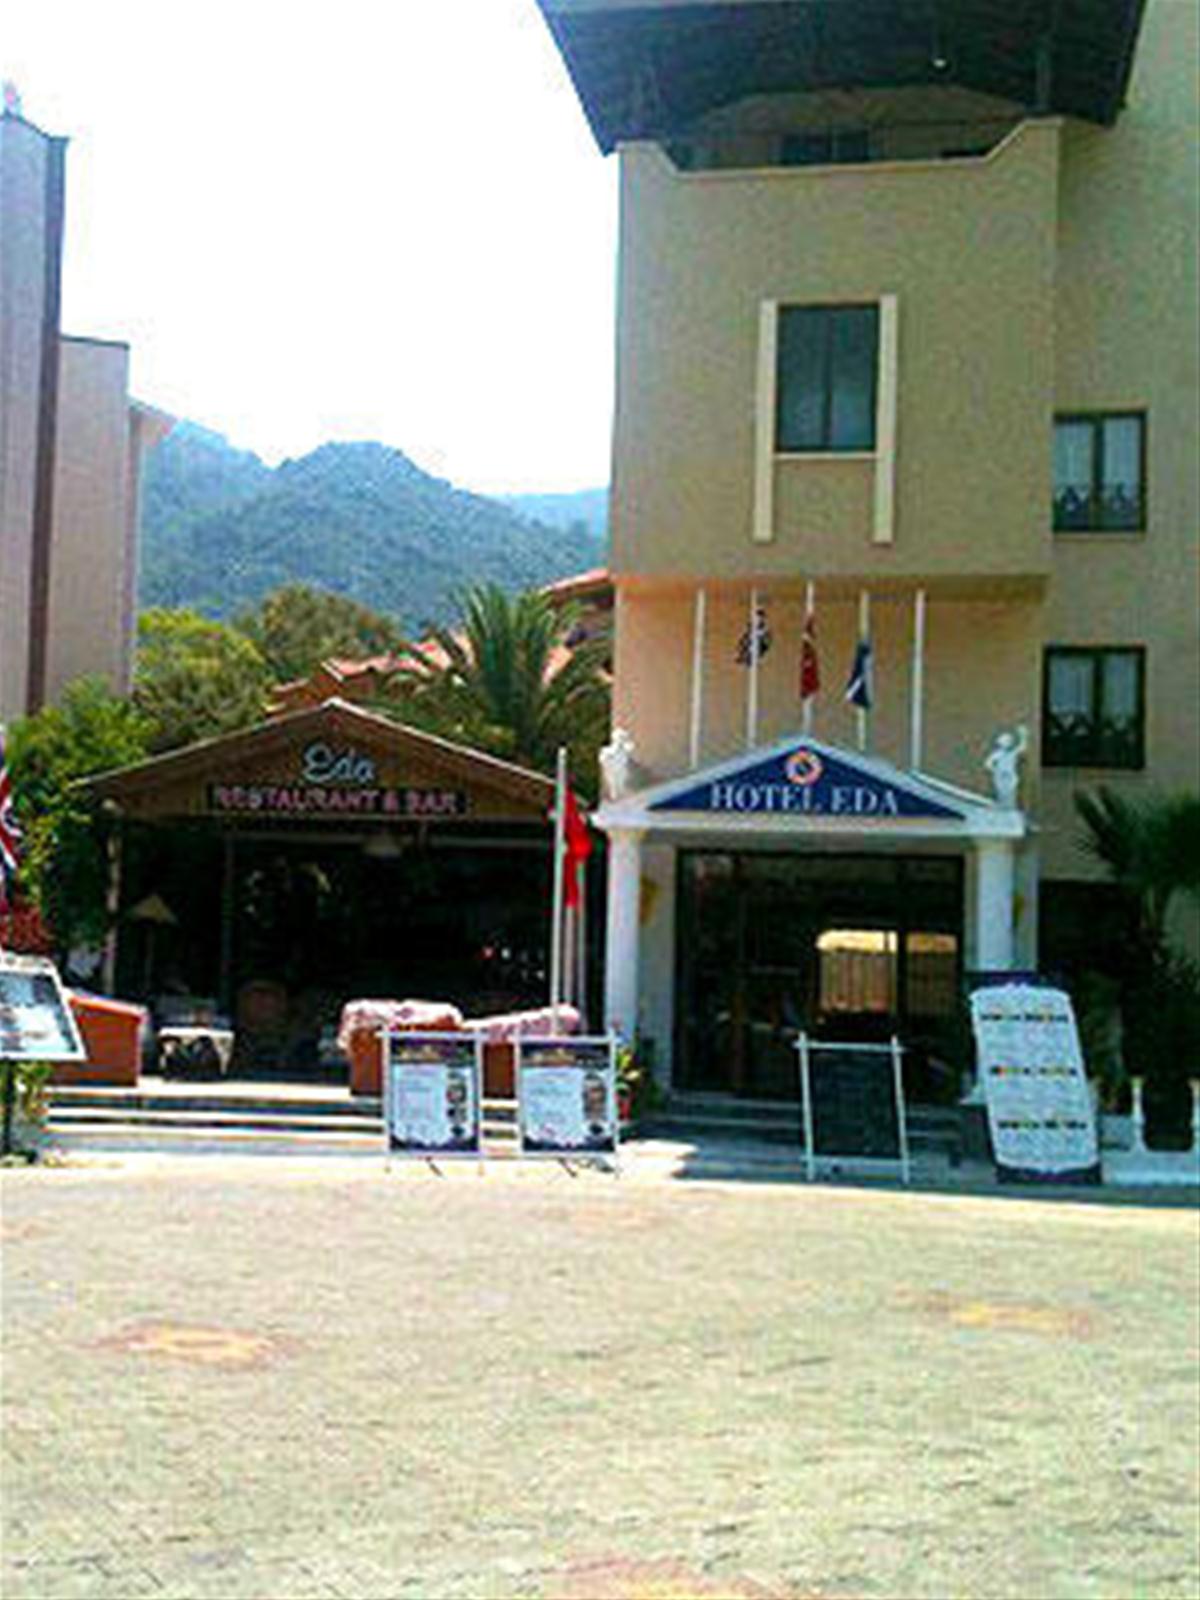 Hotel Eda